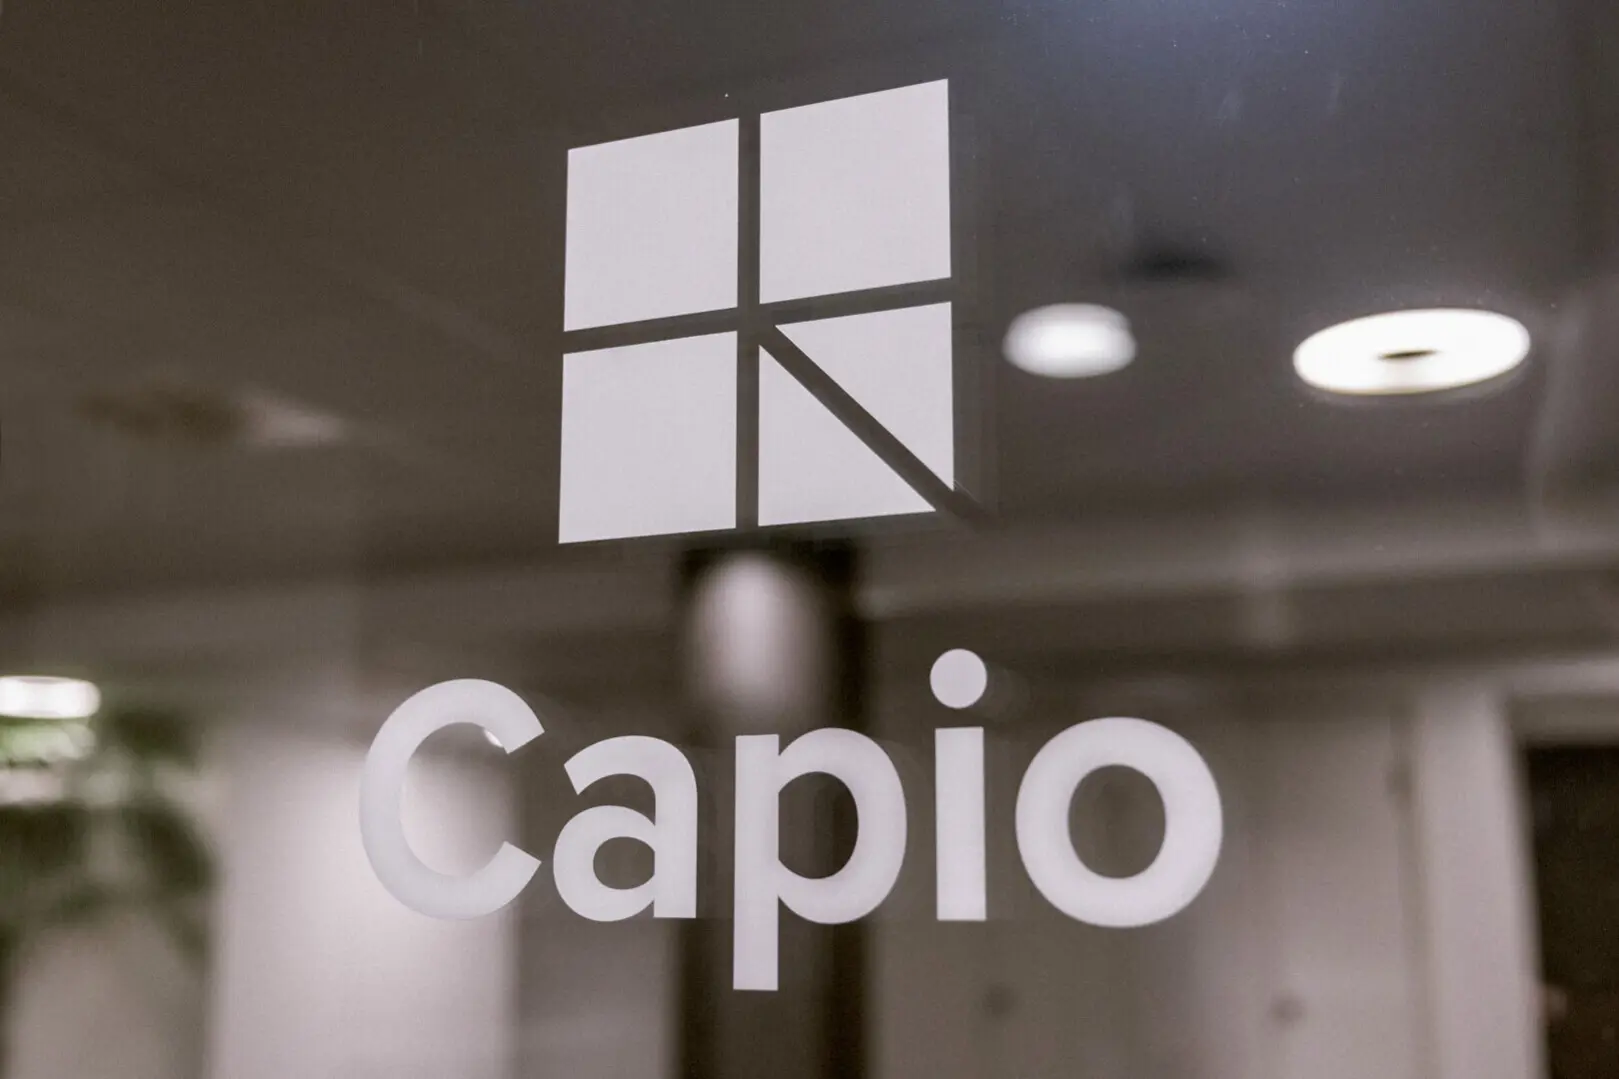 Capios logotyp på fönster